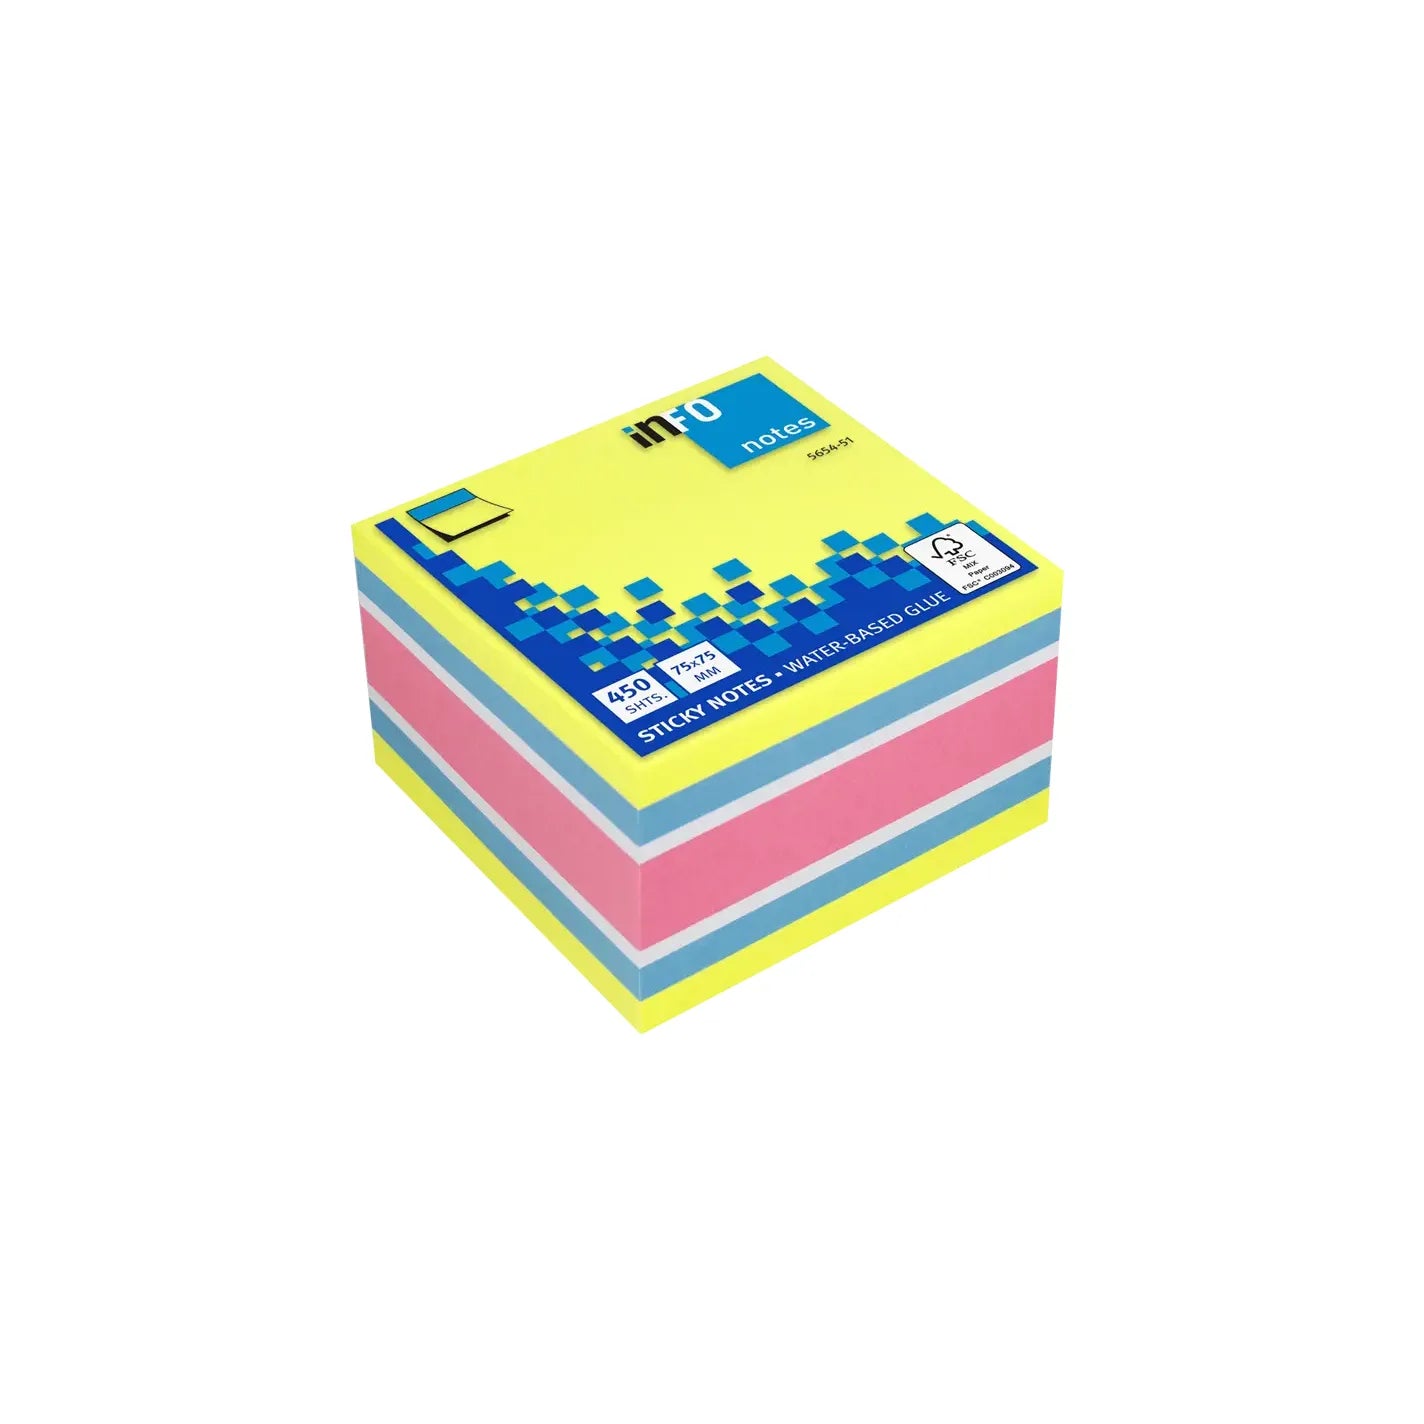 Art.No. 5654-51 Sticky note cubes